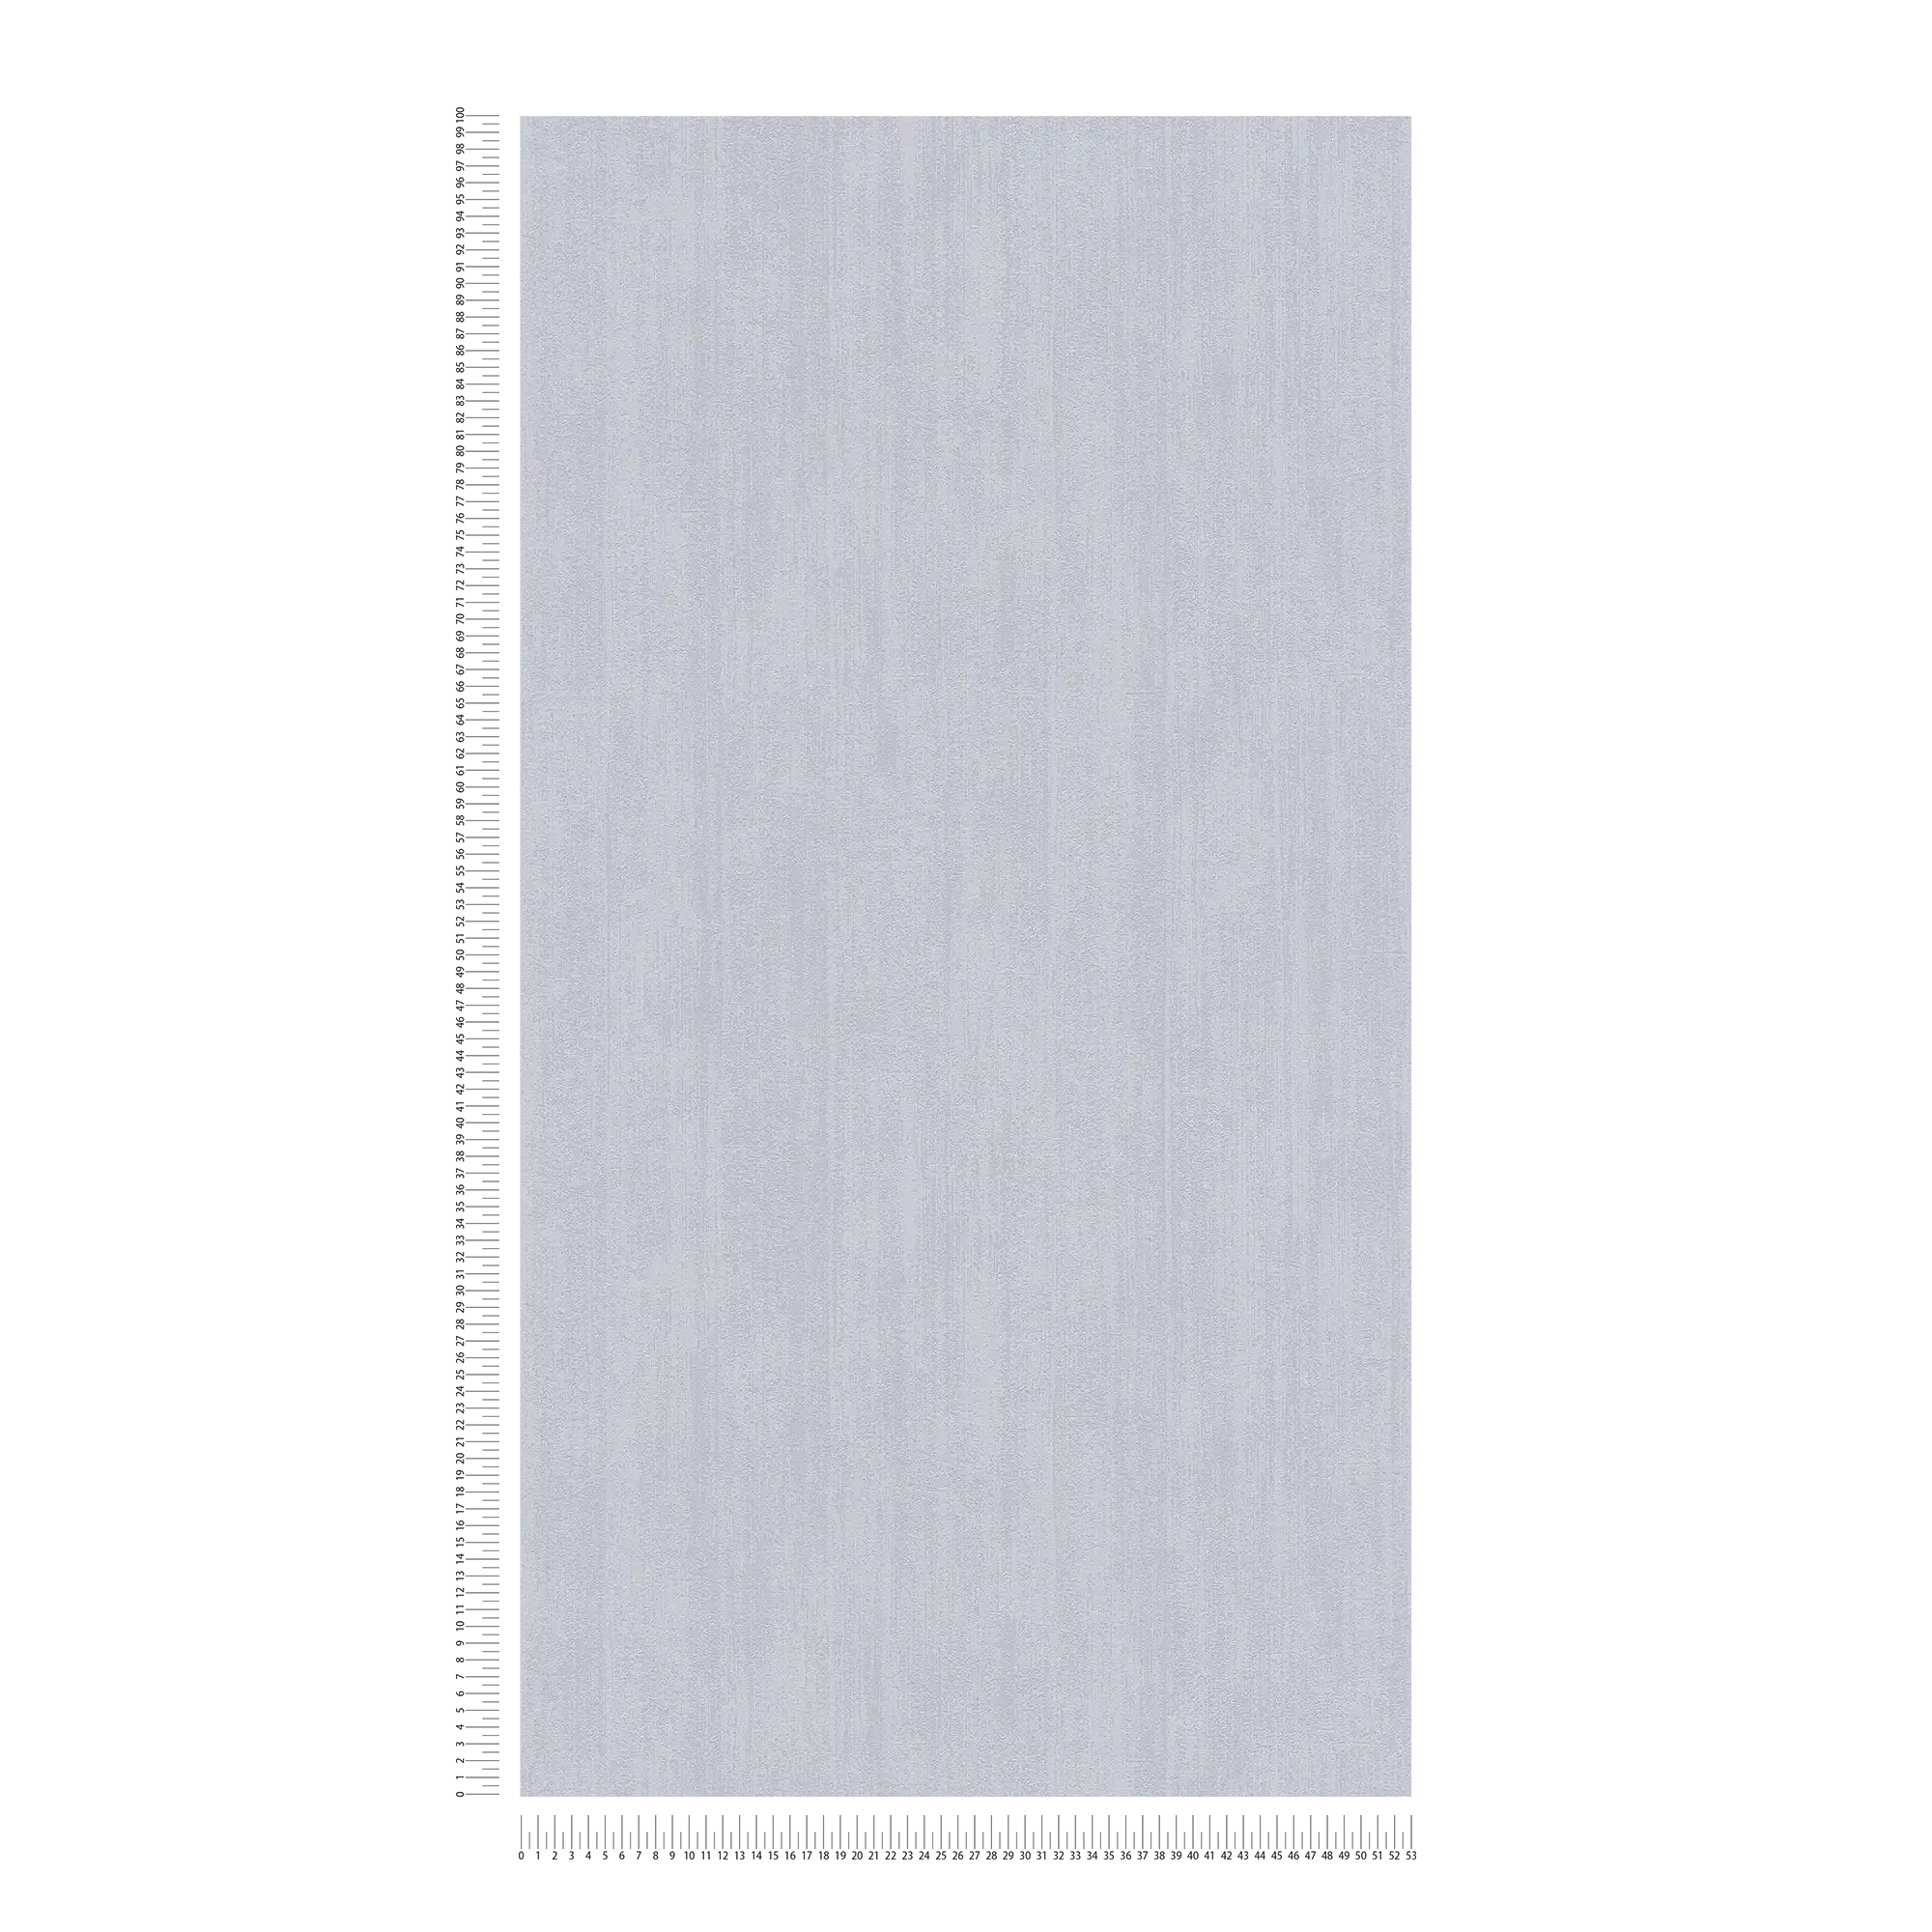             Carta da parati in tessuto non tessuto a tinta unita con tratteggio tono su tono - grigio
        